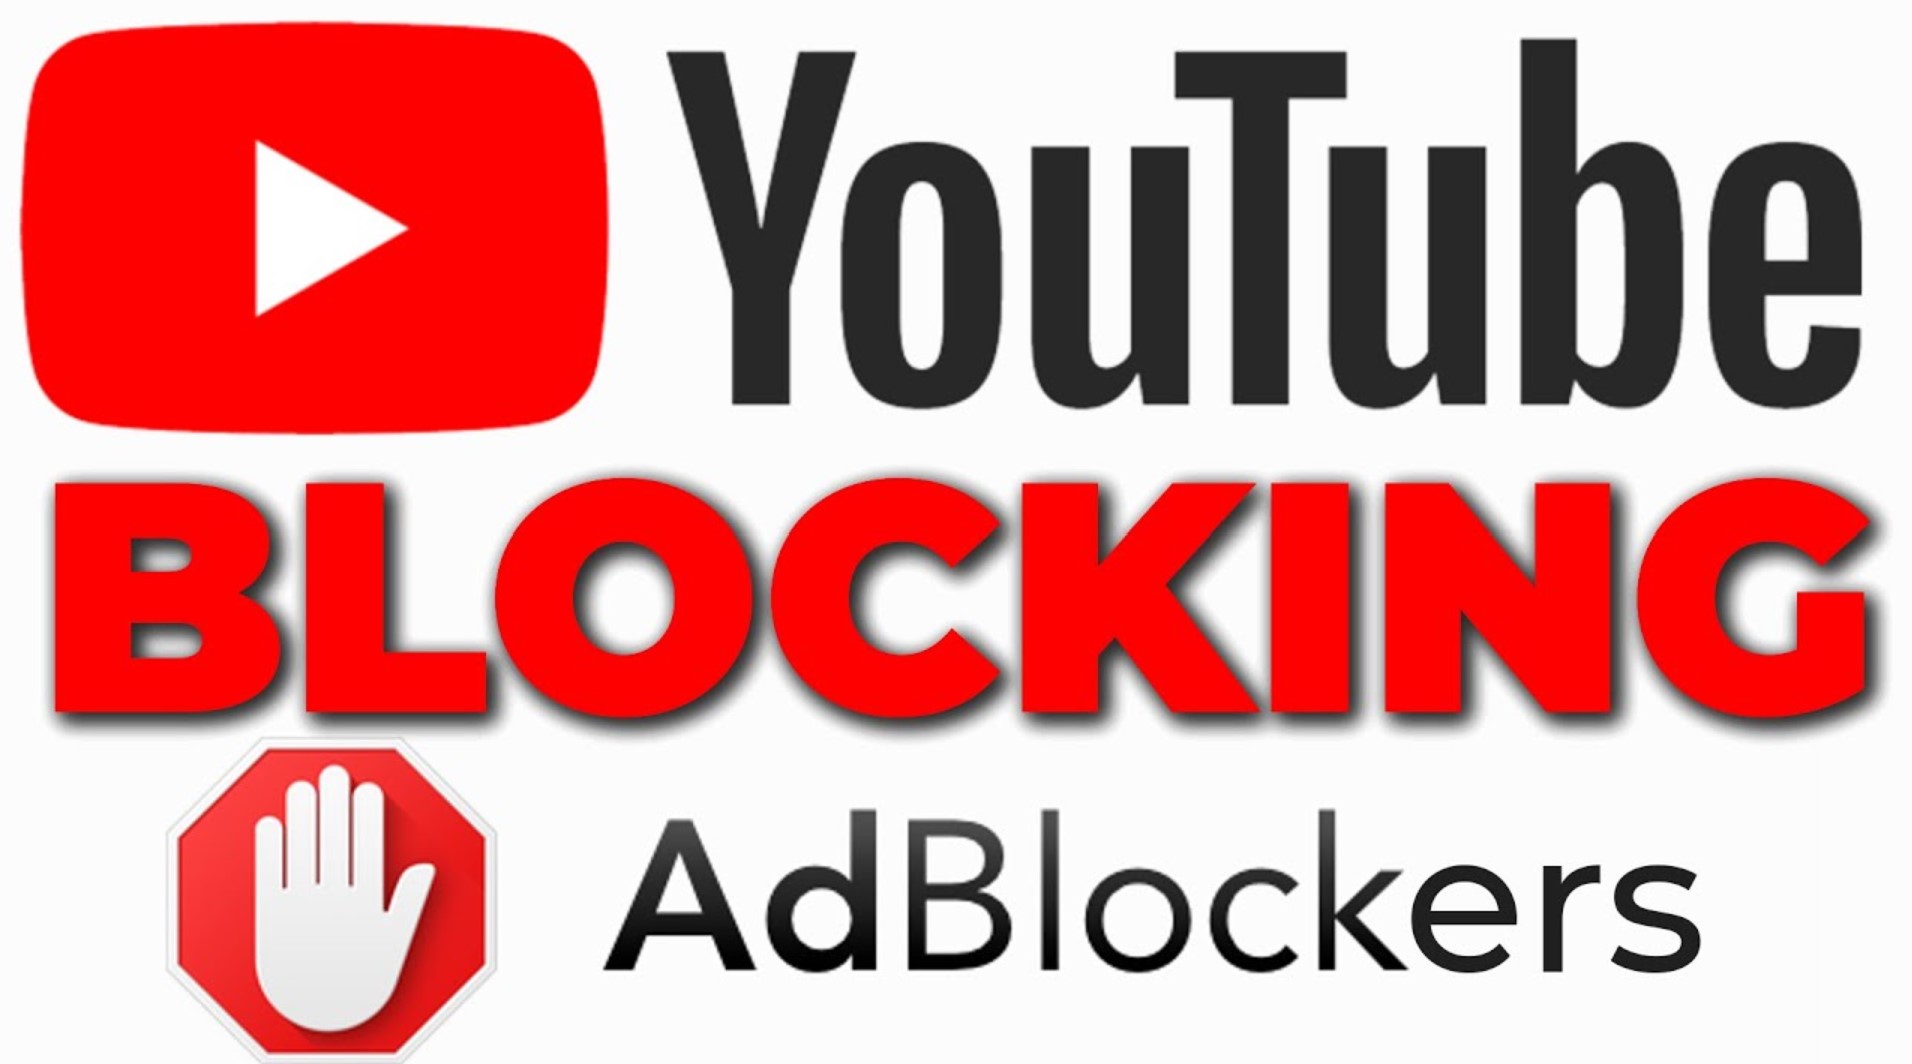 YouTube blocks ad blockers – Go Premium instead